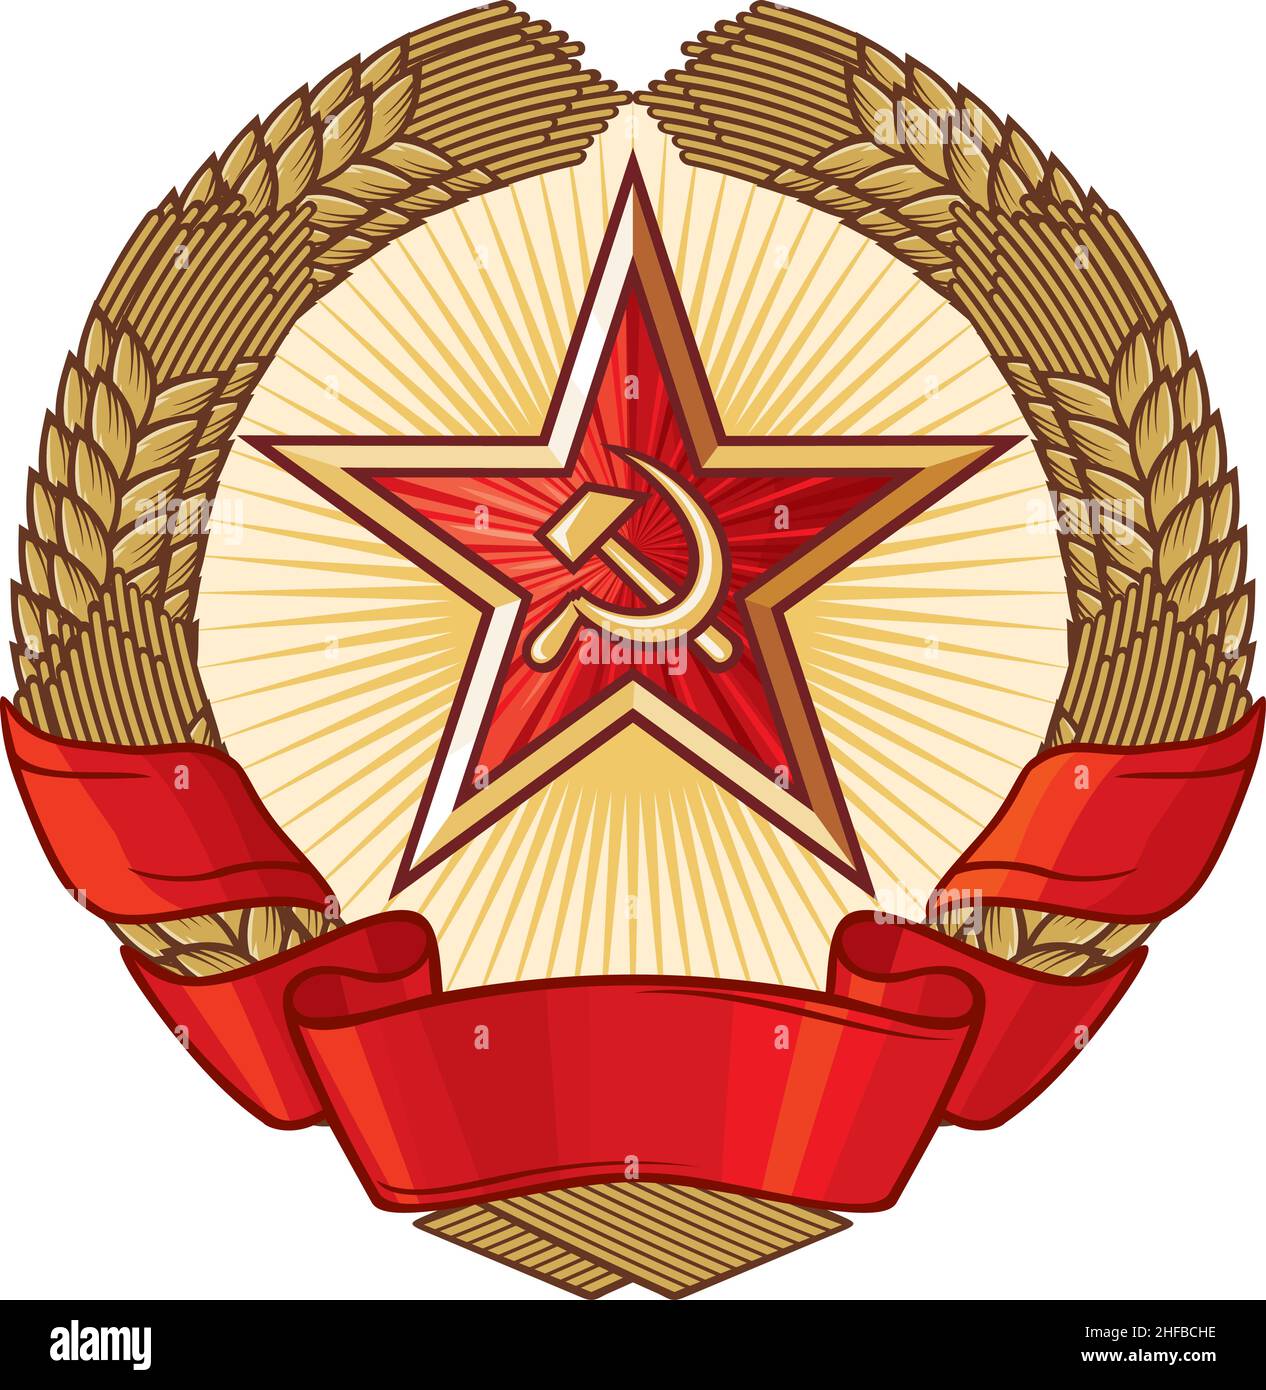 Emblema del socialismo (un símbolo del comunismo , corona de trigo y estrella). Ilustración vectorial. Ilustración del Vector